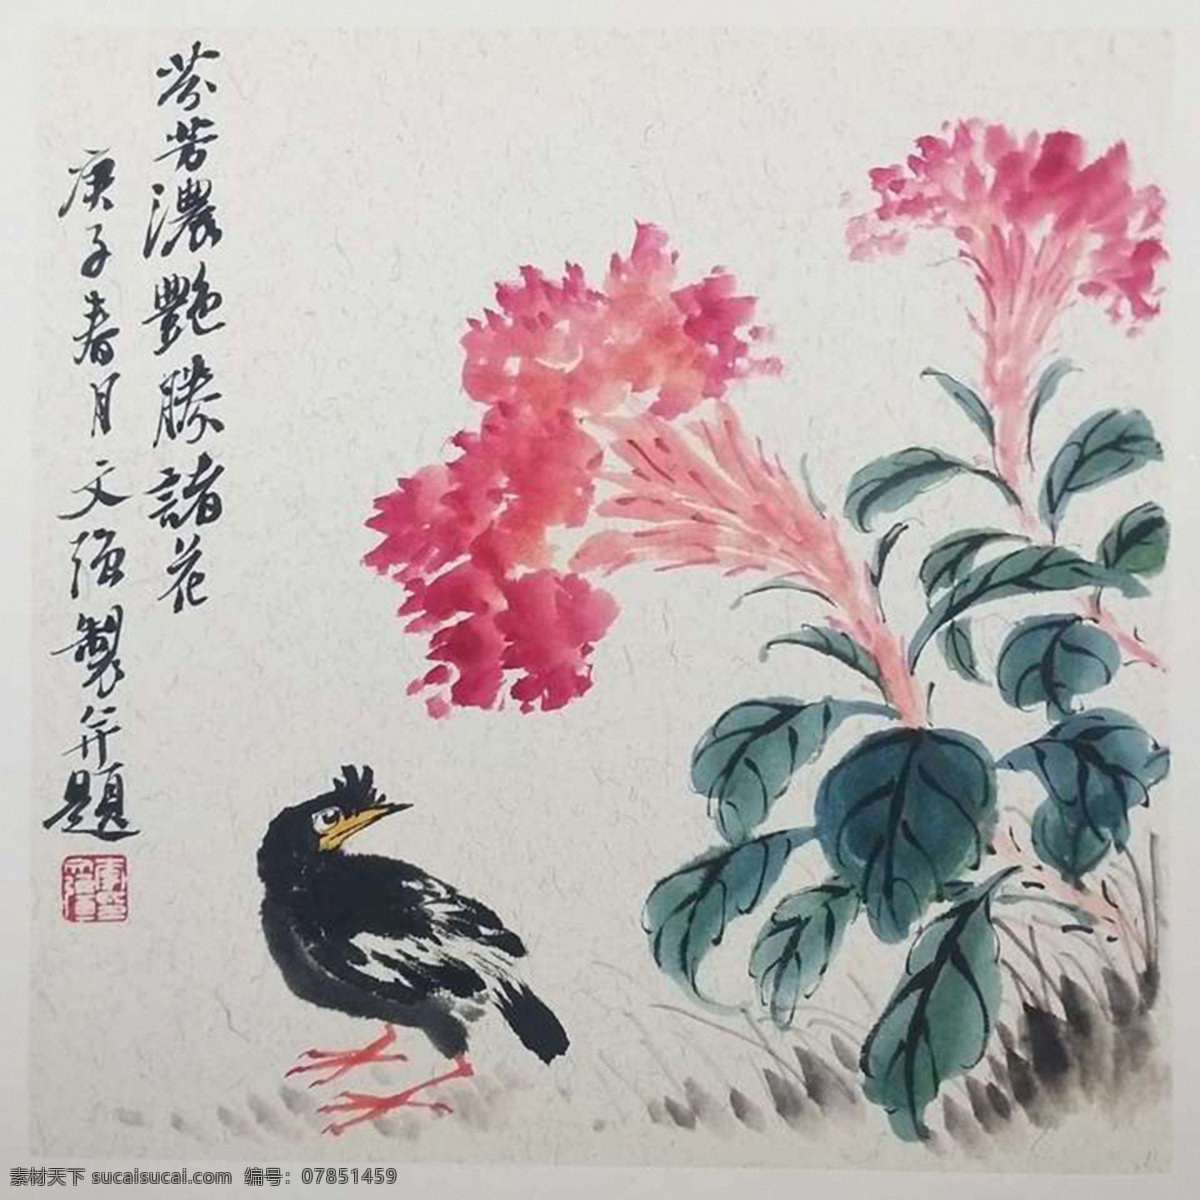 中国 传统 水墨画 花 鸟 文化艺术 绘画书法